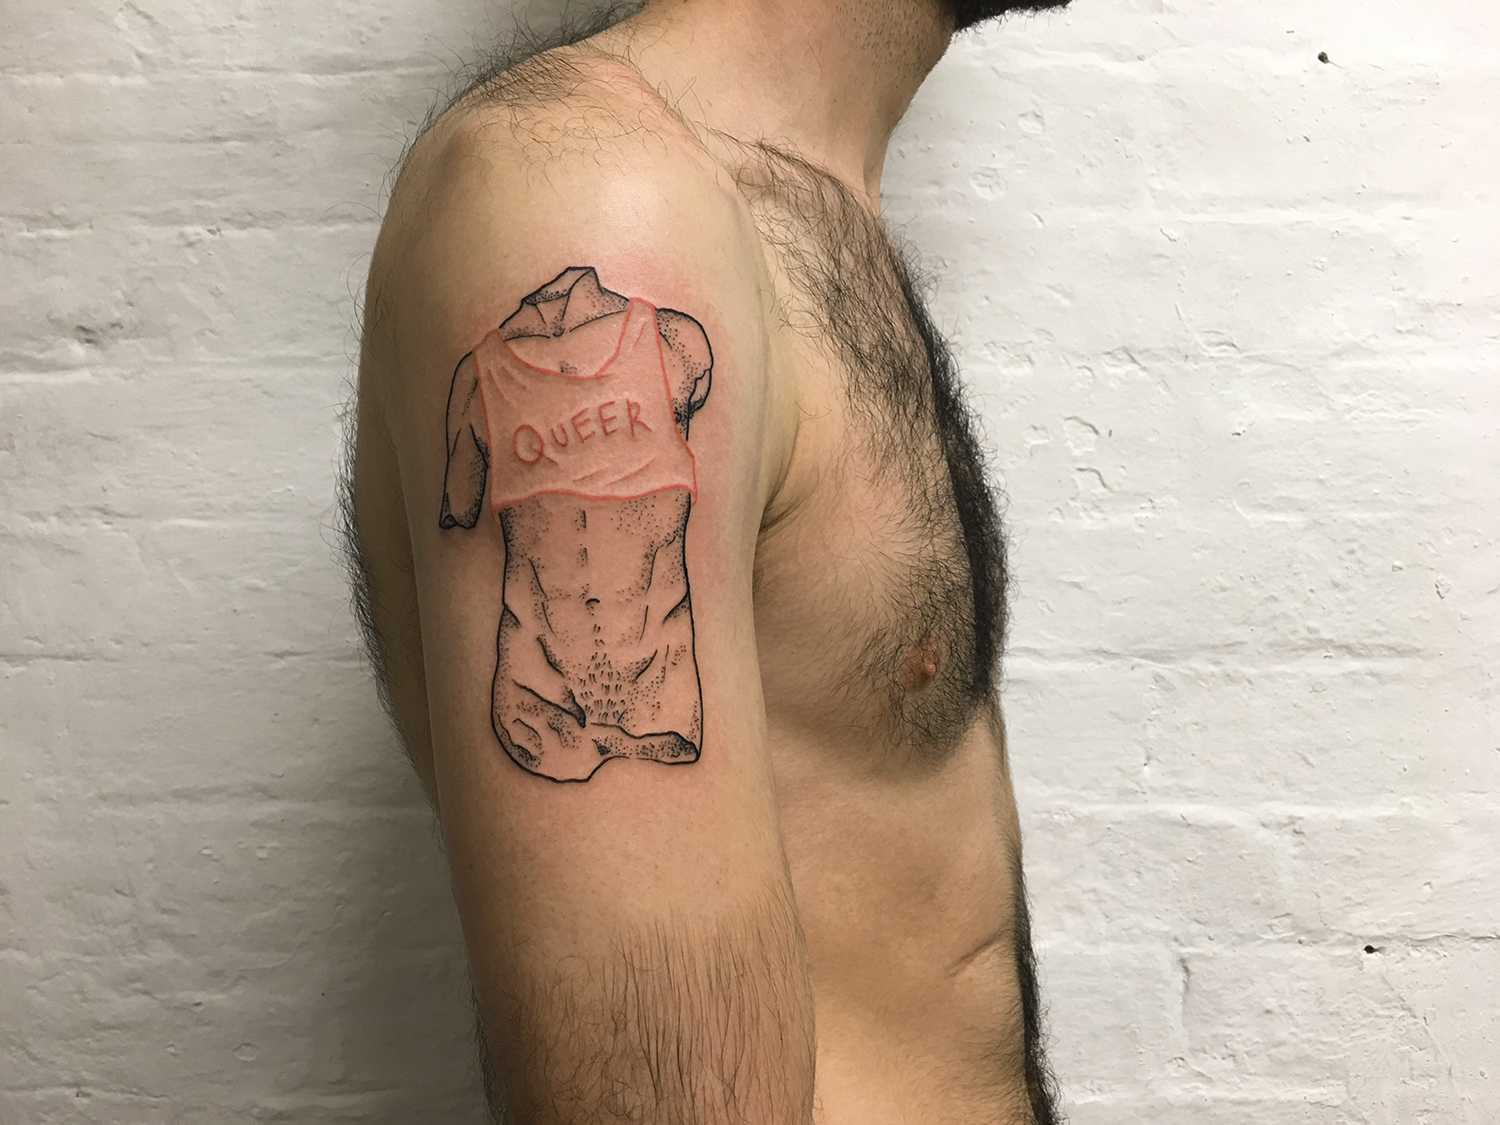 Adam Traves, Disinhibition - queer torso tattoo